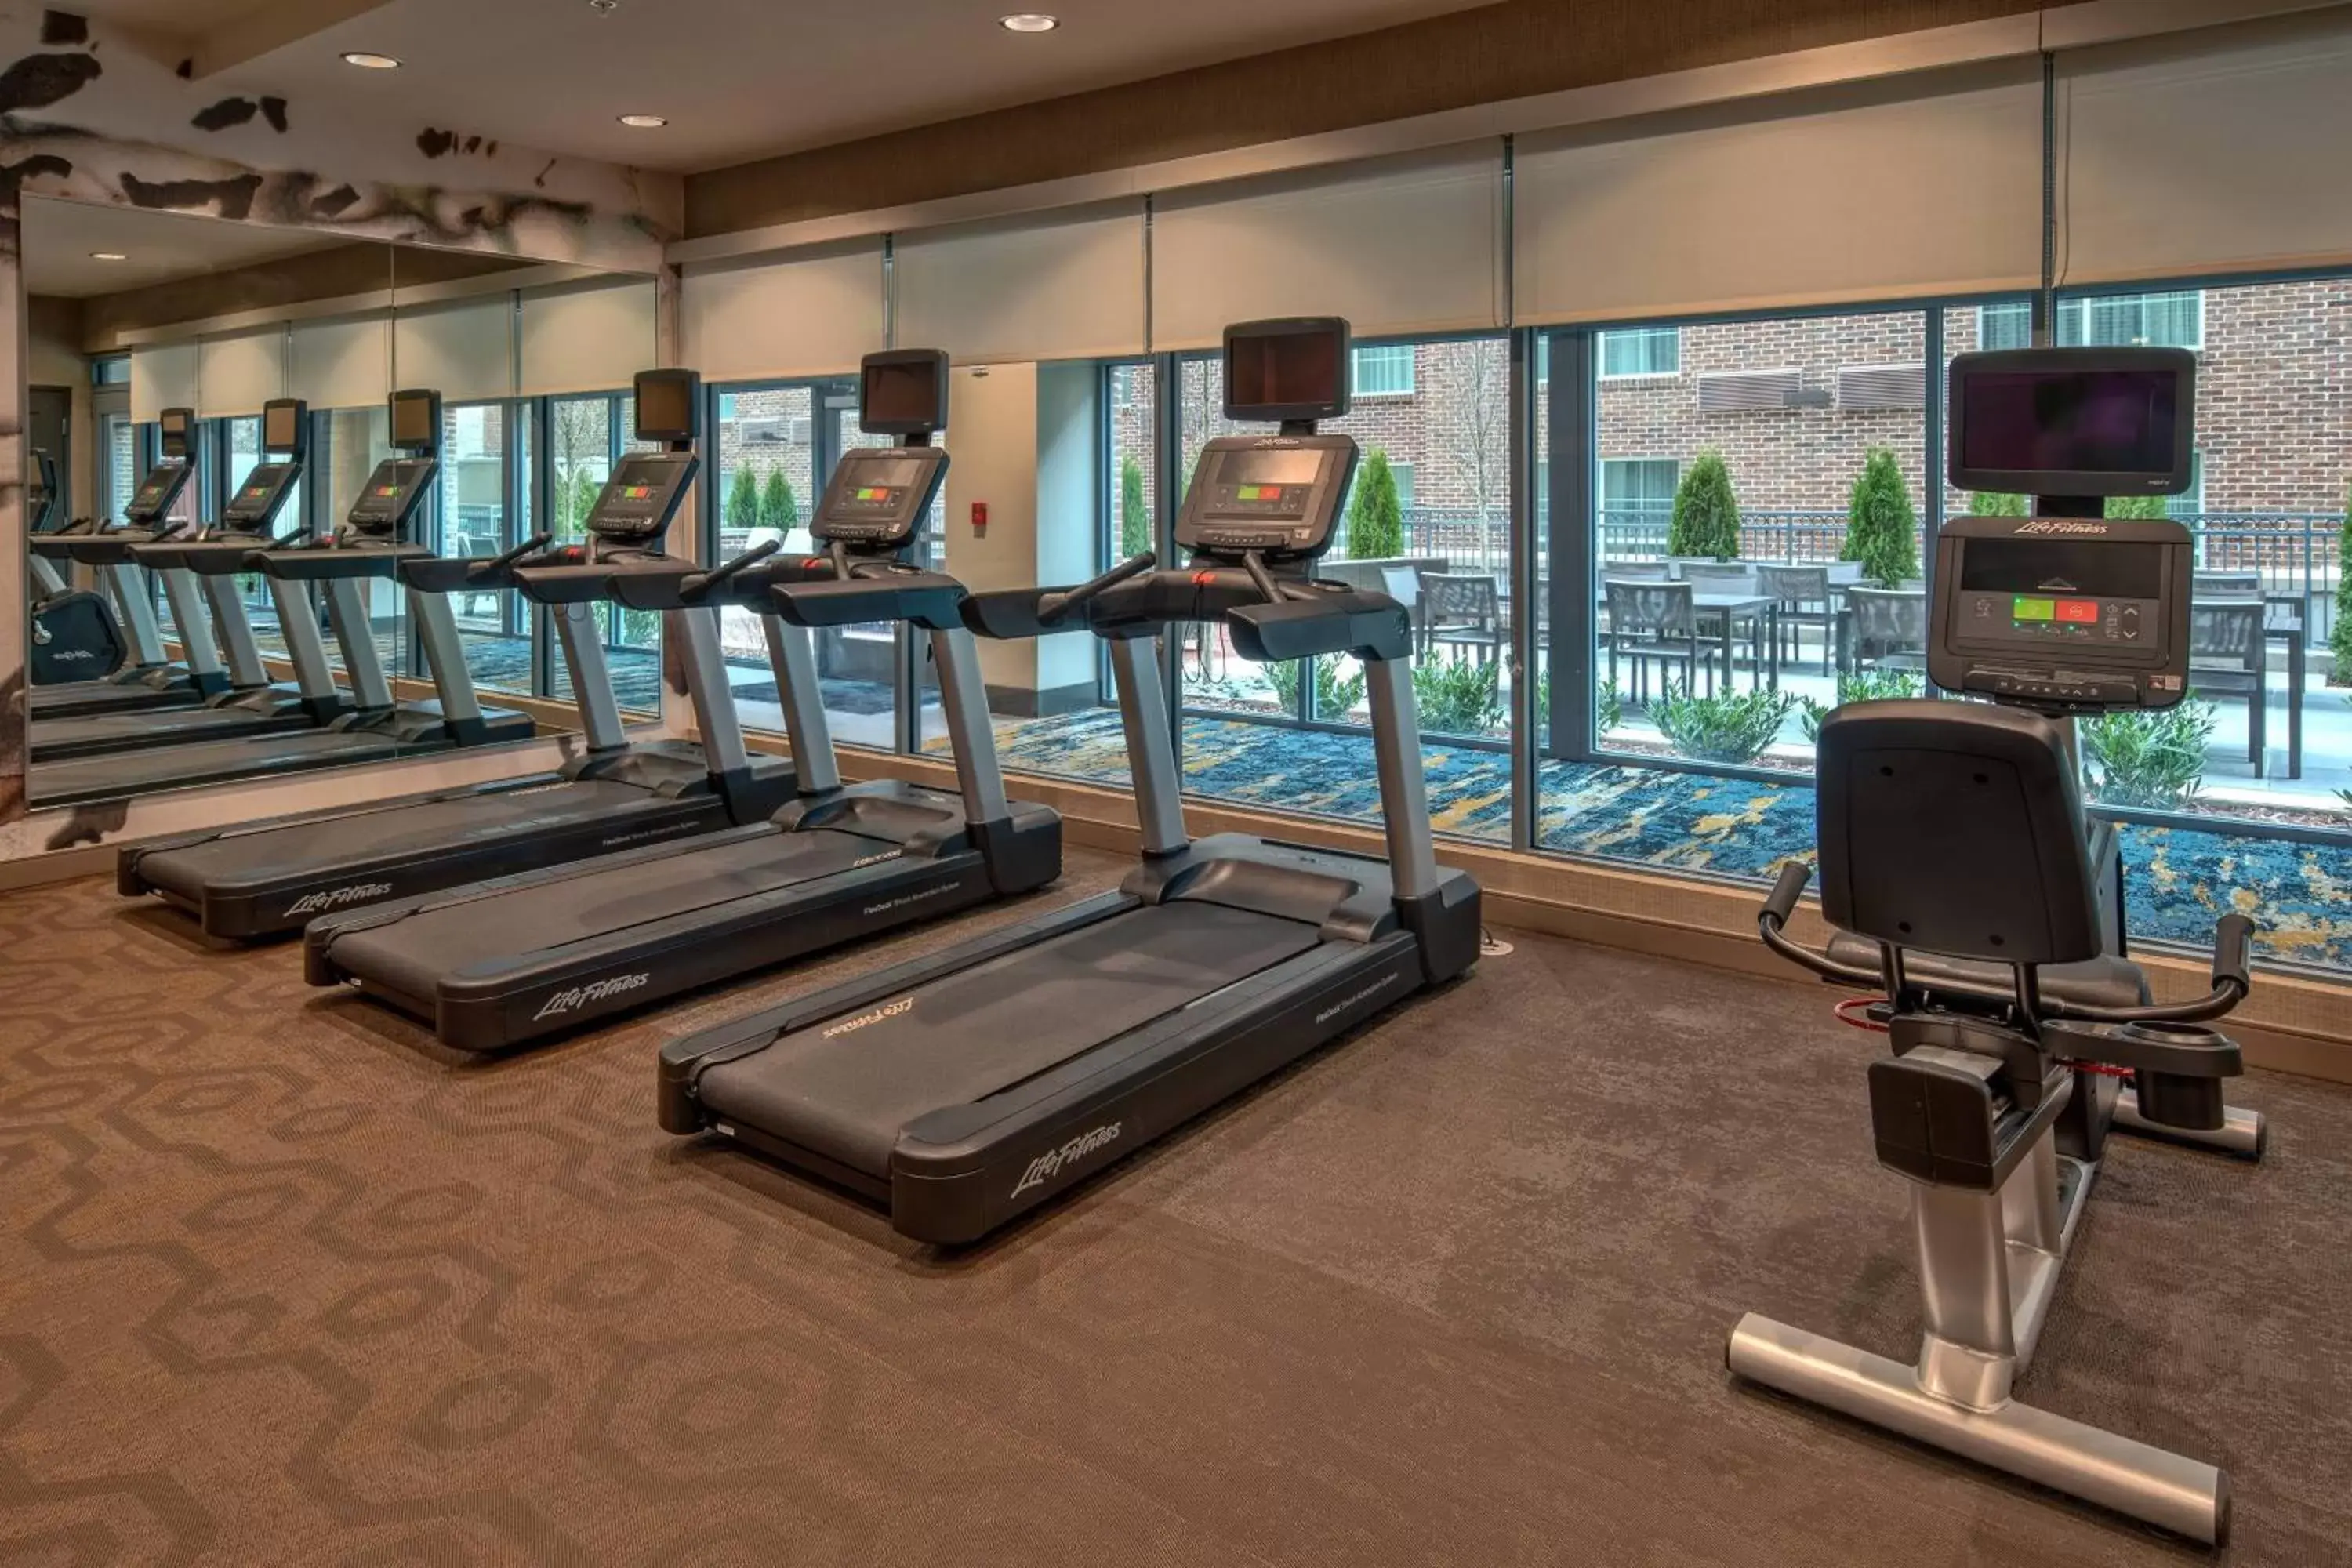 Fitness centre/facilities, Fitness Center/Facilities in Residence Inn by Marriott Nashville Green Hills